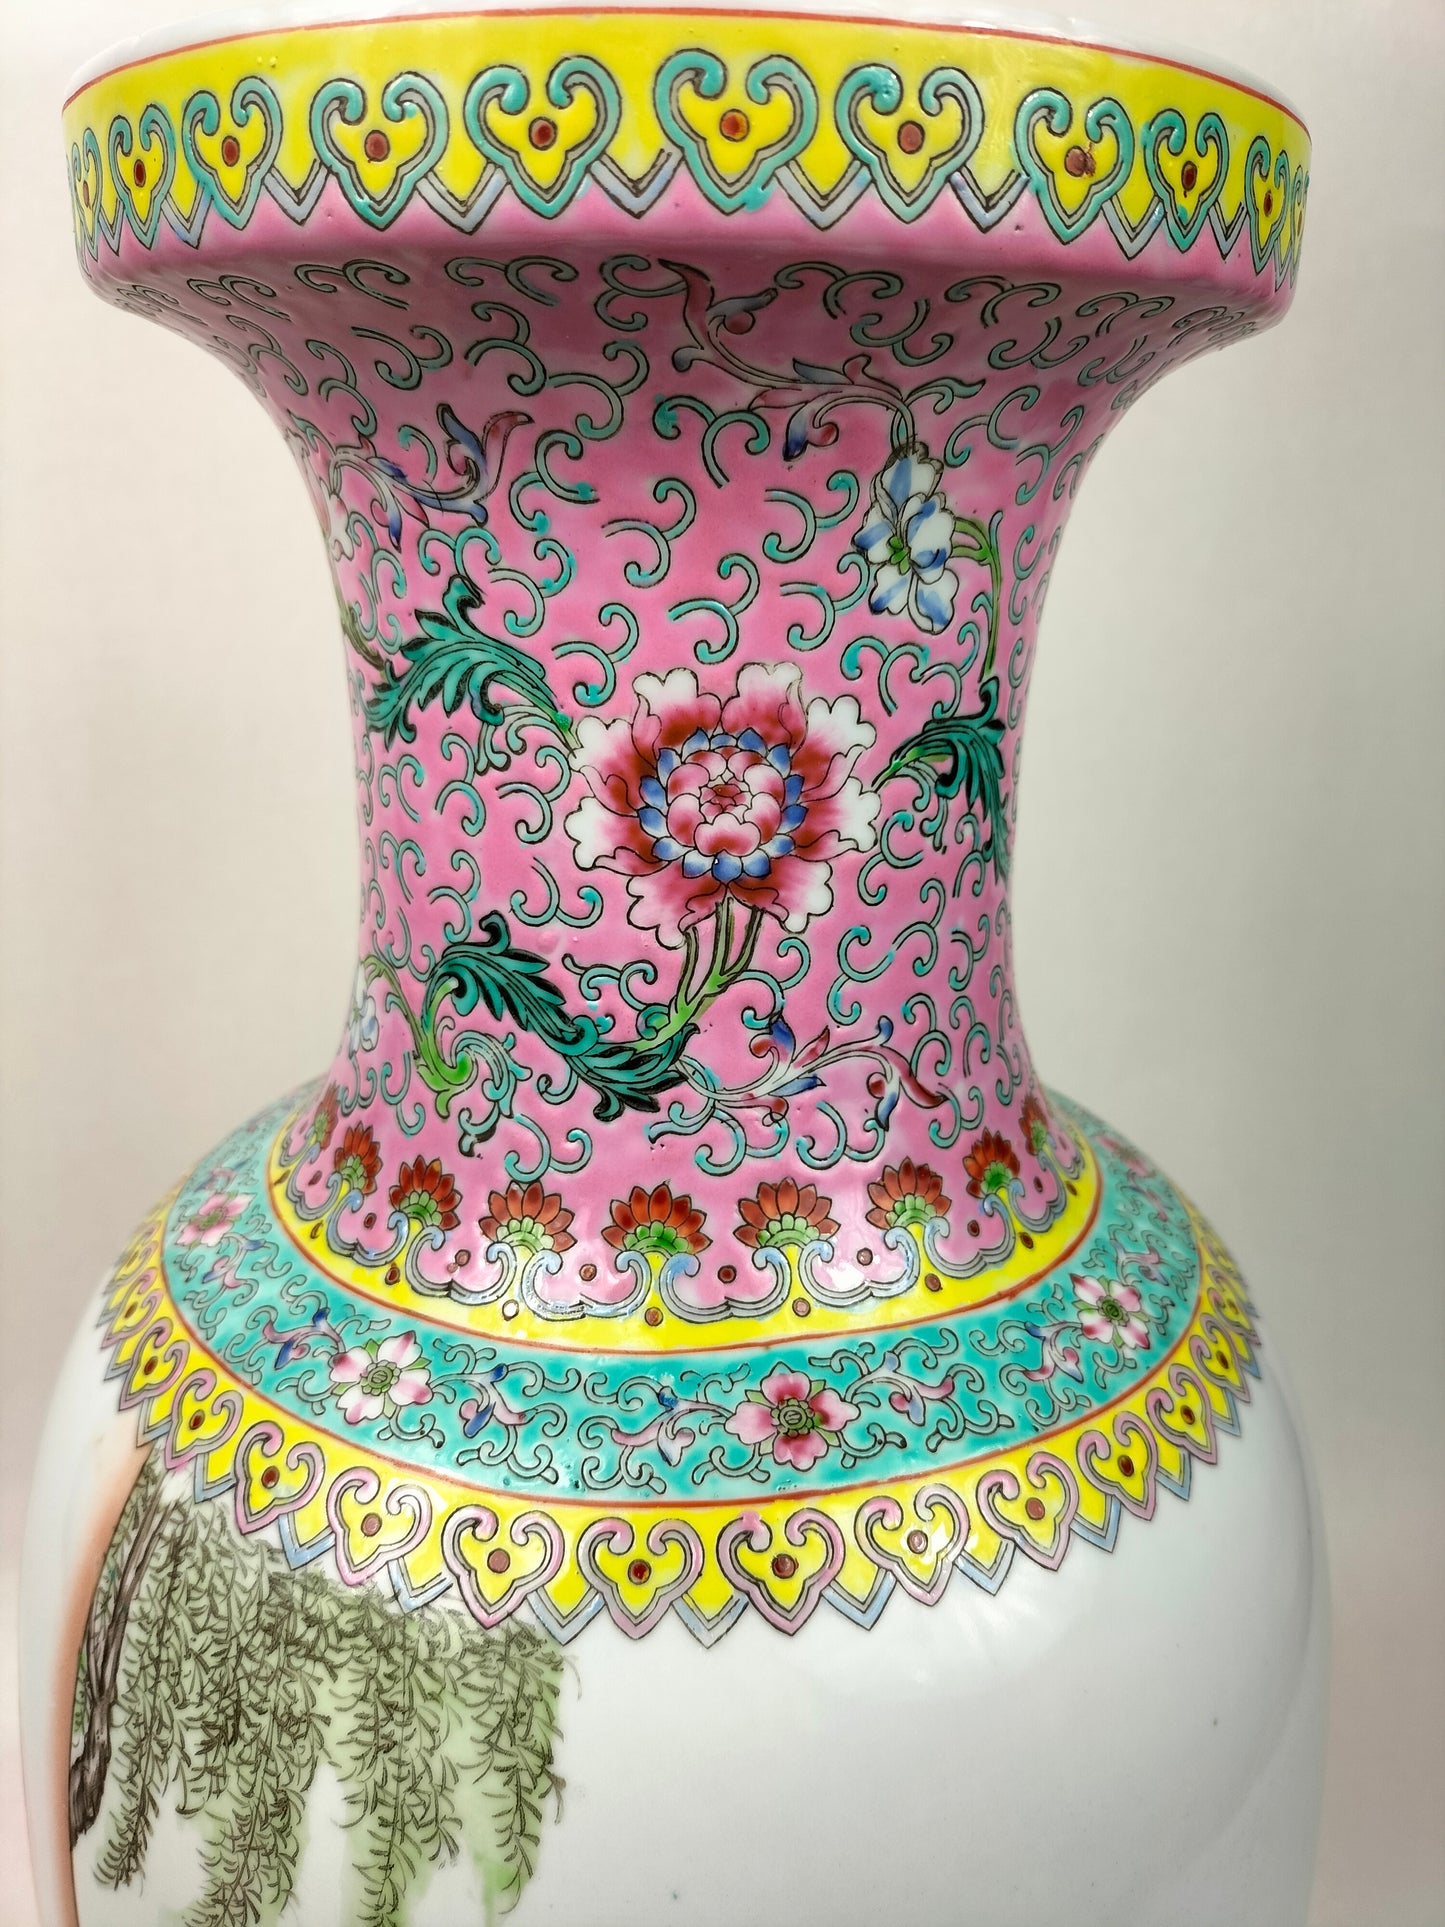 大型中国粉彩人物花瓶 // 景德镇 - 20 世纪